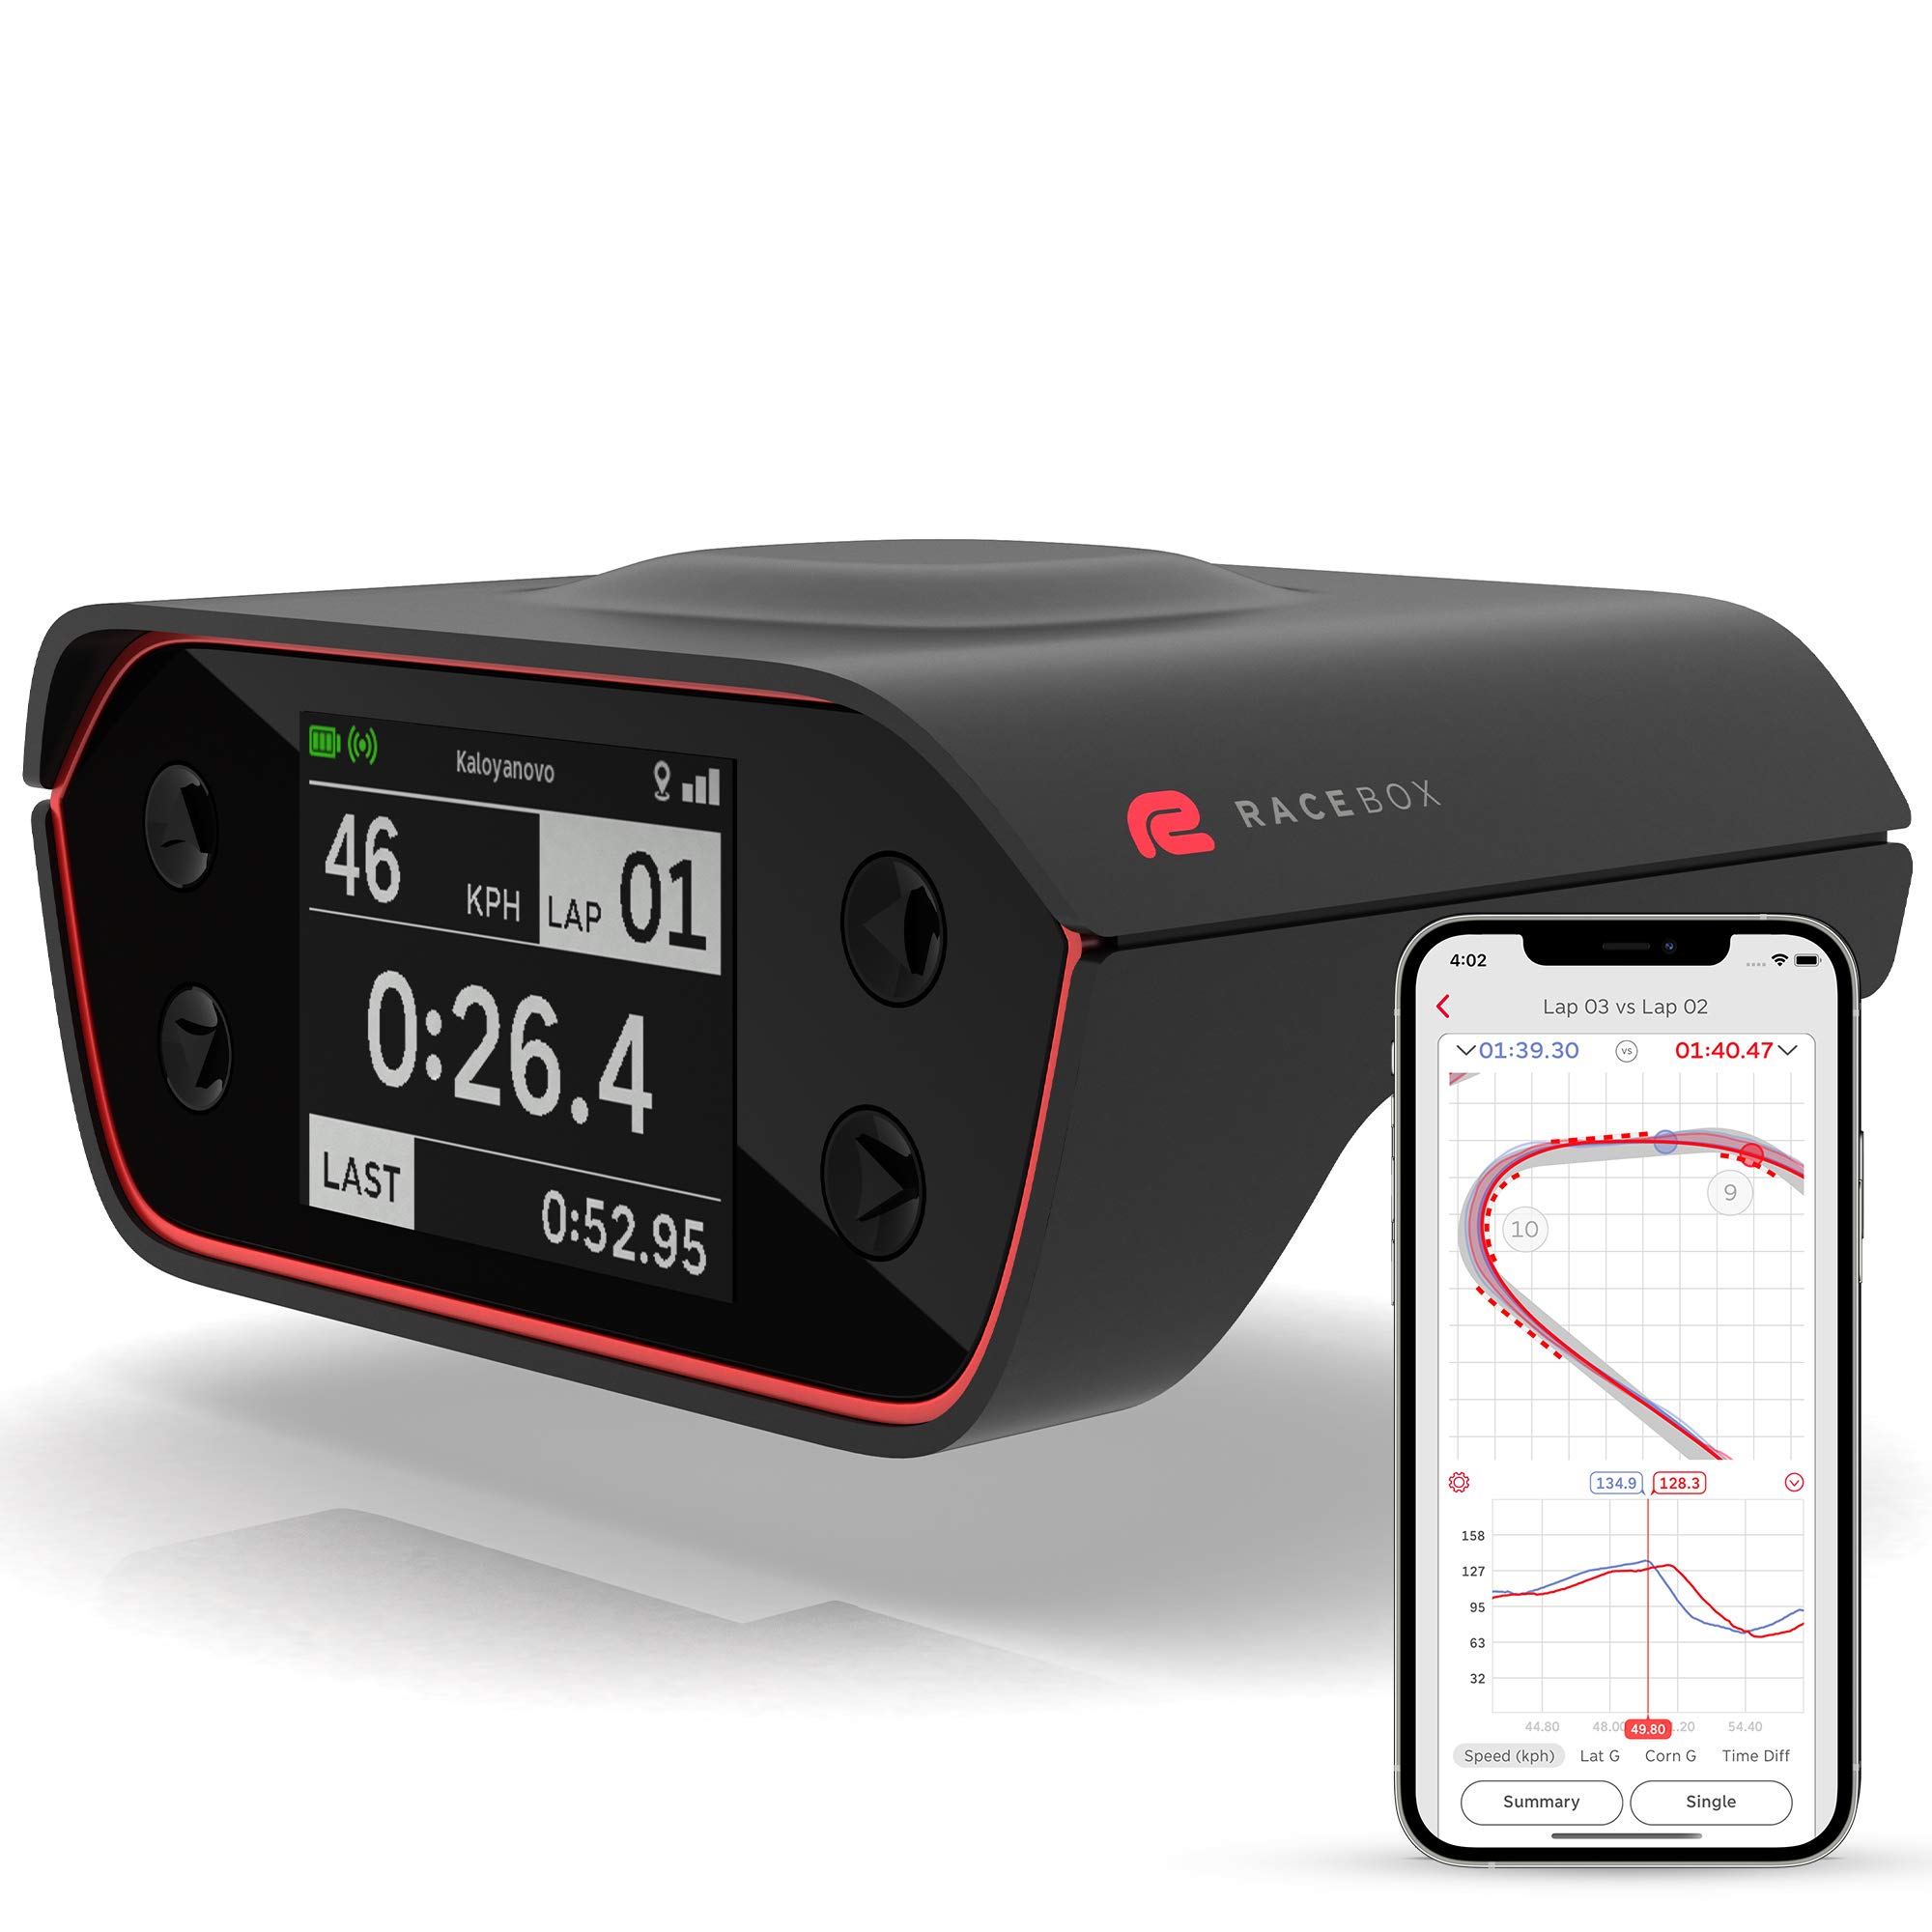  RaceBox 10Hz GPS 公式ベースパフォーマンスメーターボックス、モバイルアプリ付き - カーラップタイマーとドラッグメーター - レーシング加速度計デ...